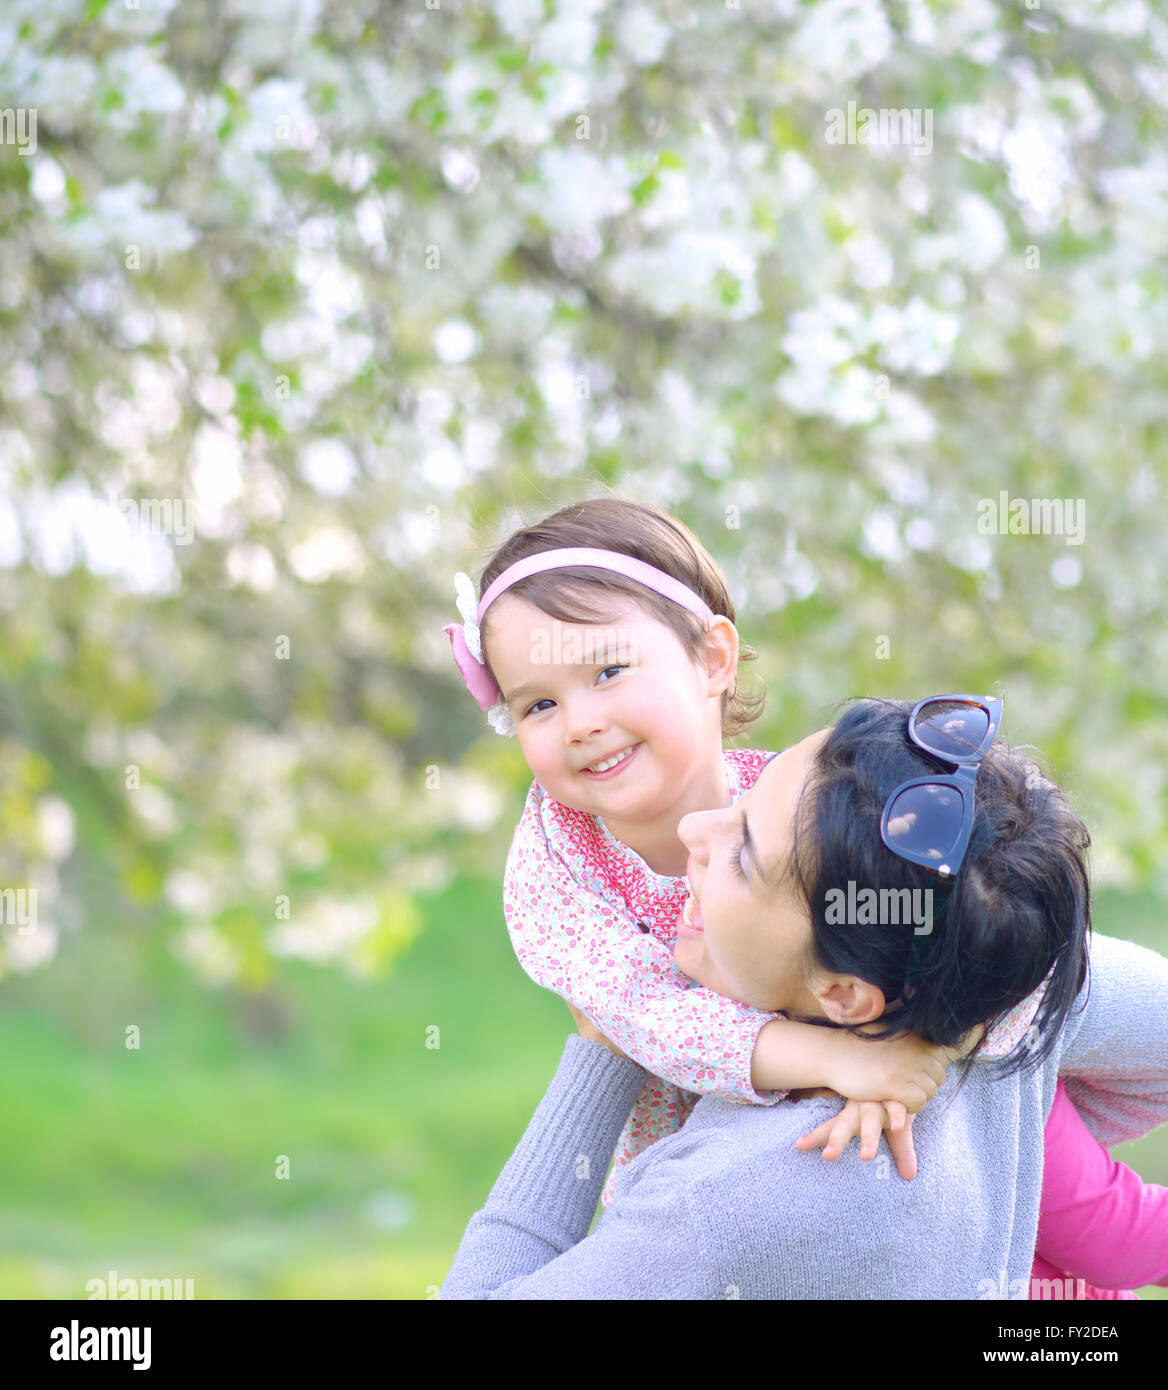 Mutter und Tochter spielen zusammen in einem park Stockfoto